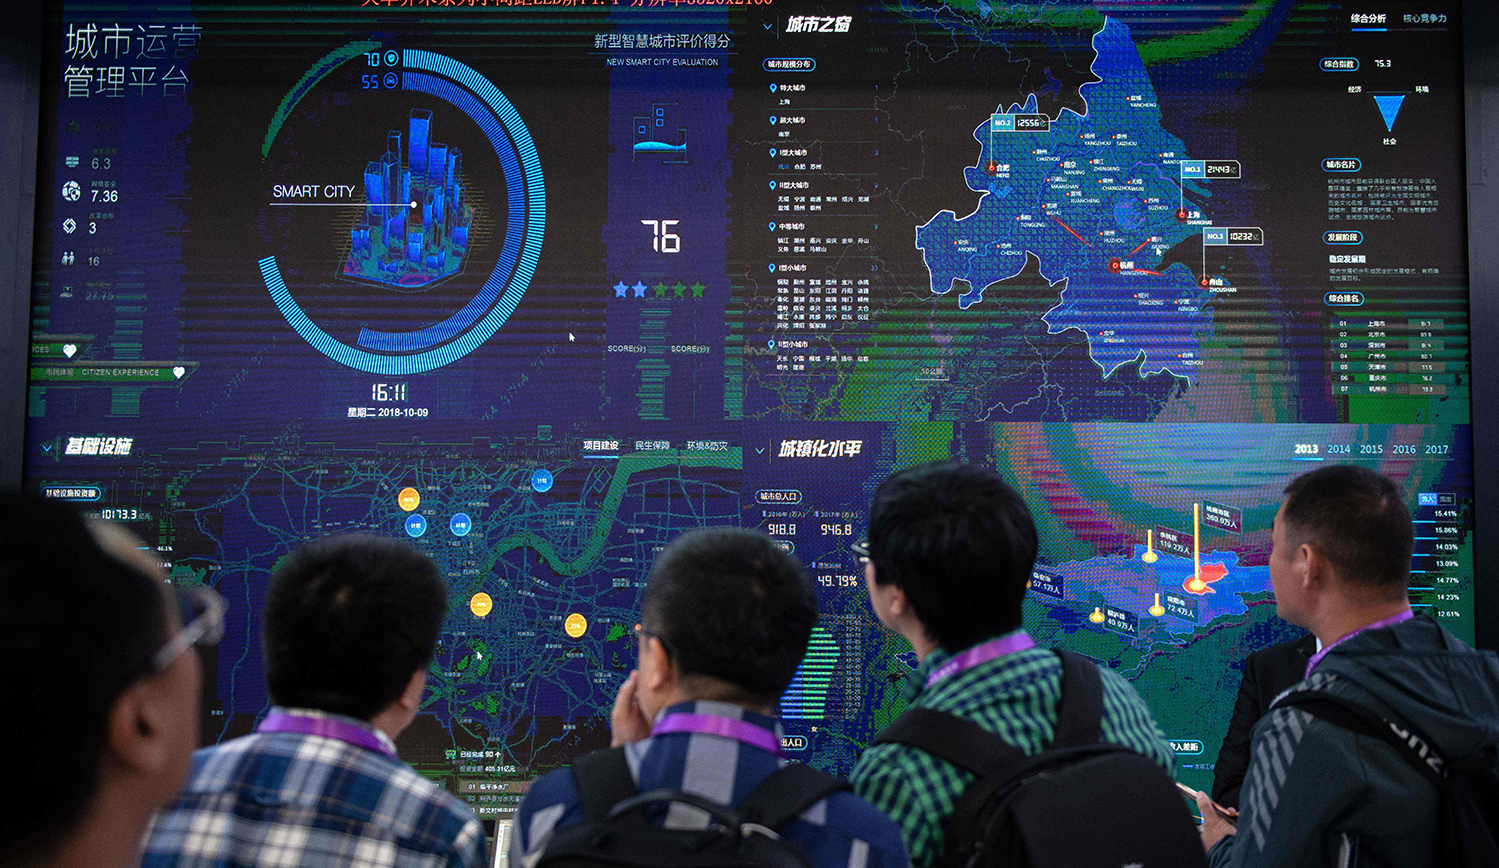 Des visiteurs chinois face à un logiciel de sécurité urbaine fondé sur l'intelligence artificielle au 14ème salon international sur la sécurité publique à Pékin le 24 octobre 2018. (Source : Mosaic)